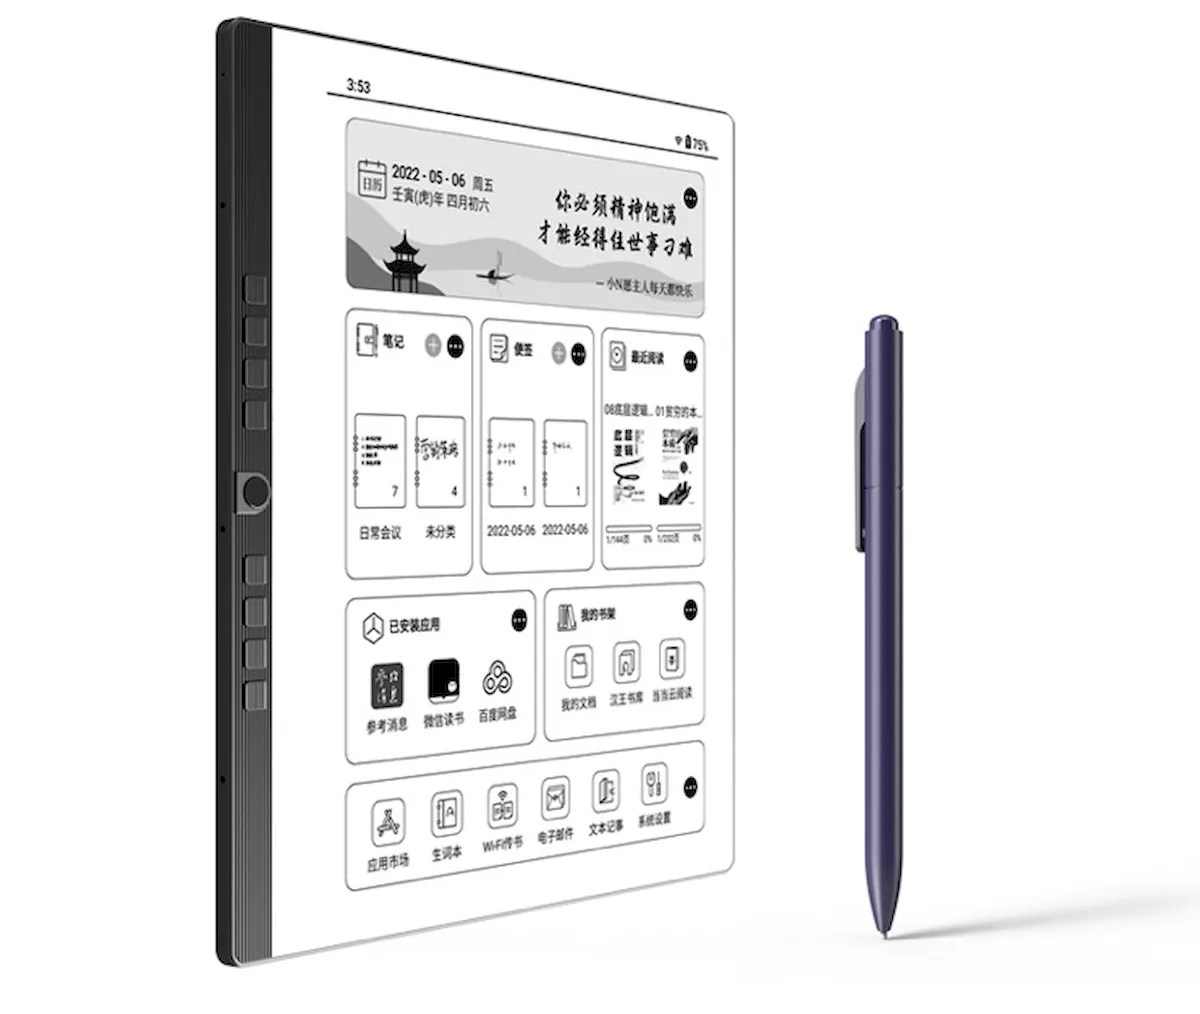 Hanvon N10, um tablet E Ink de 10.3 polegadas com suporte a caneta